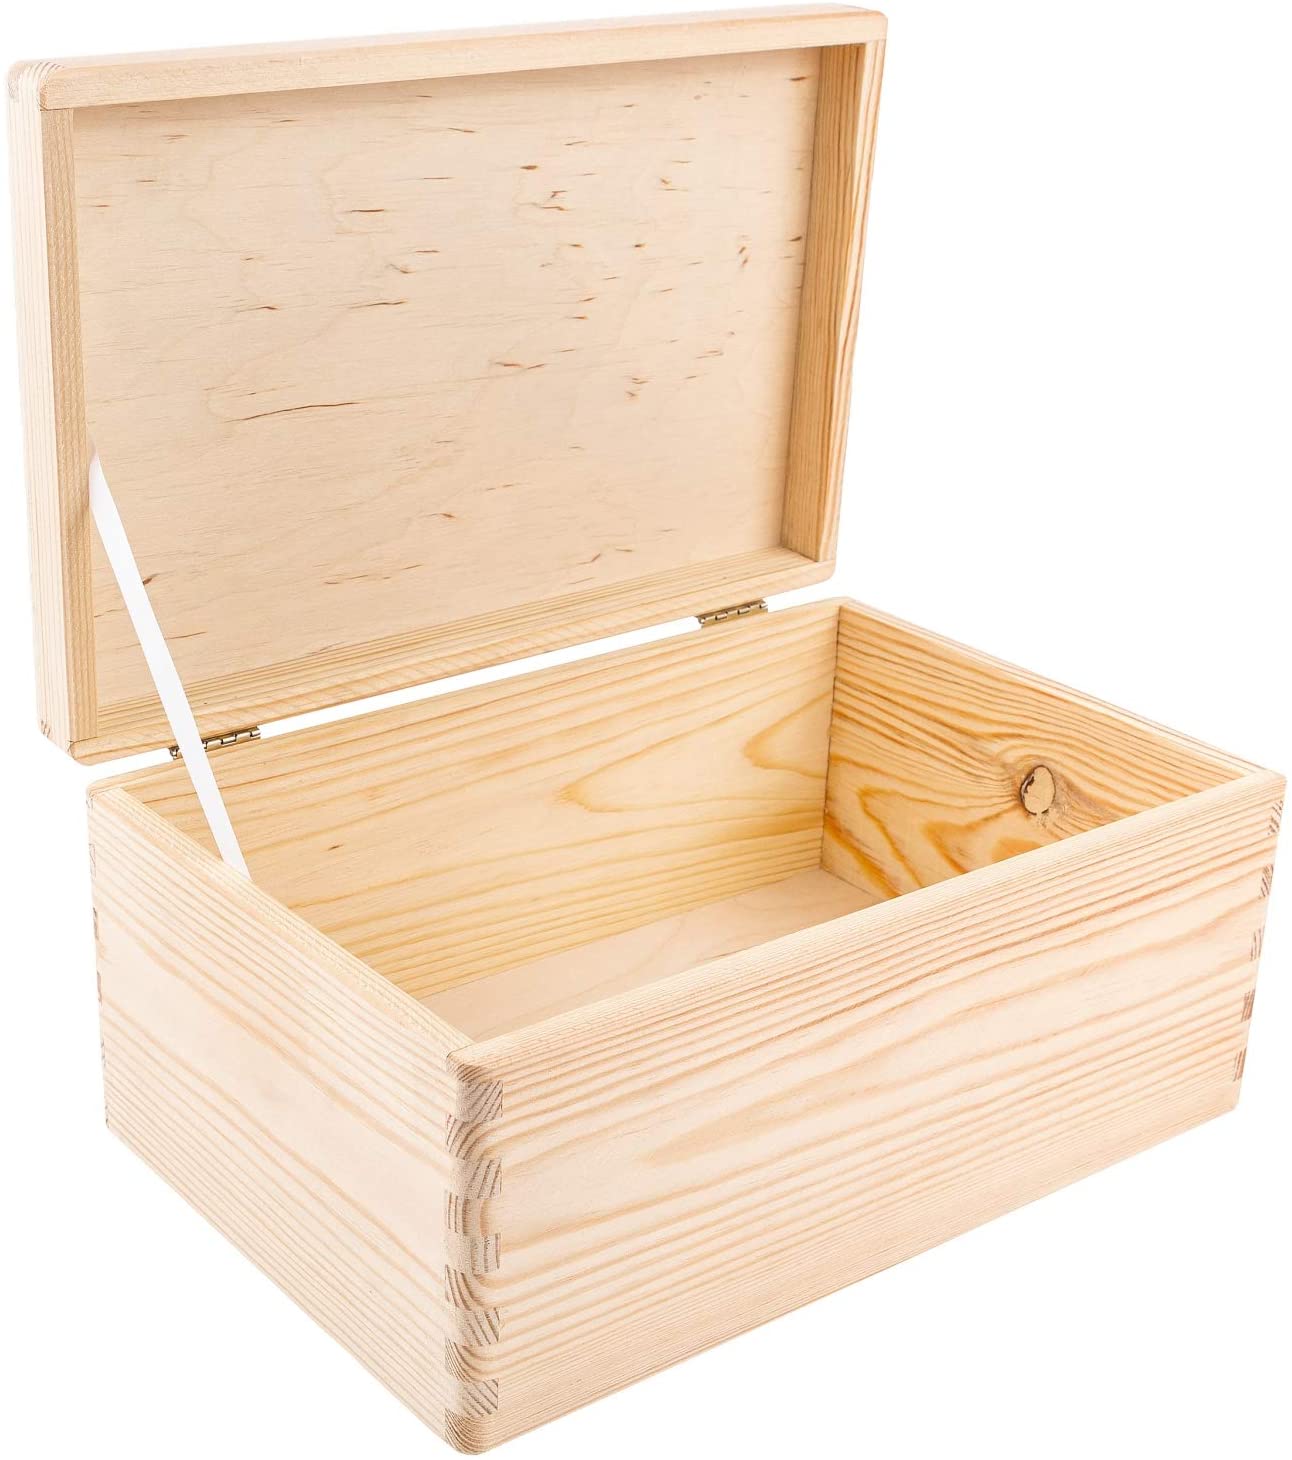 Box für Zucker und zur Aufbewahrung, aus Holz, natur, 19,5 x 13 x